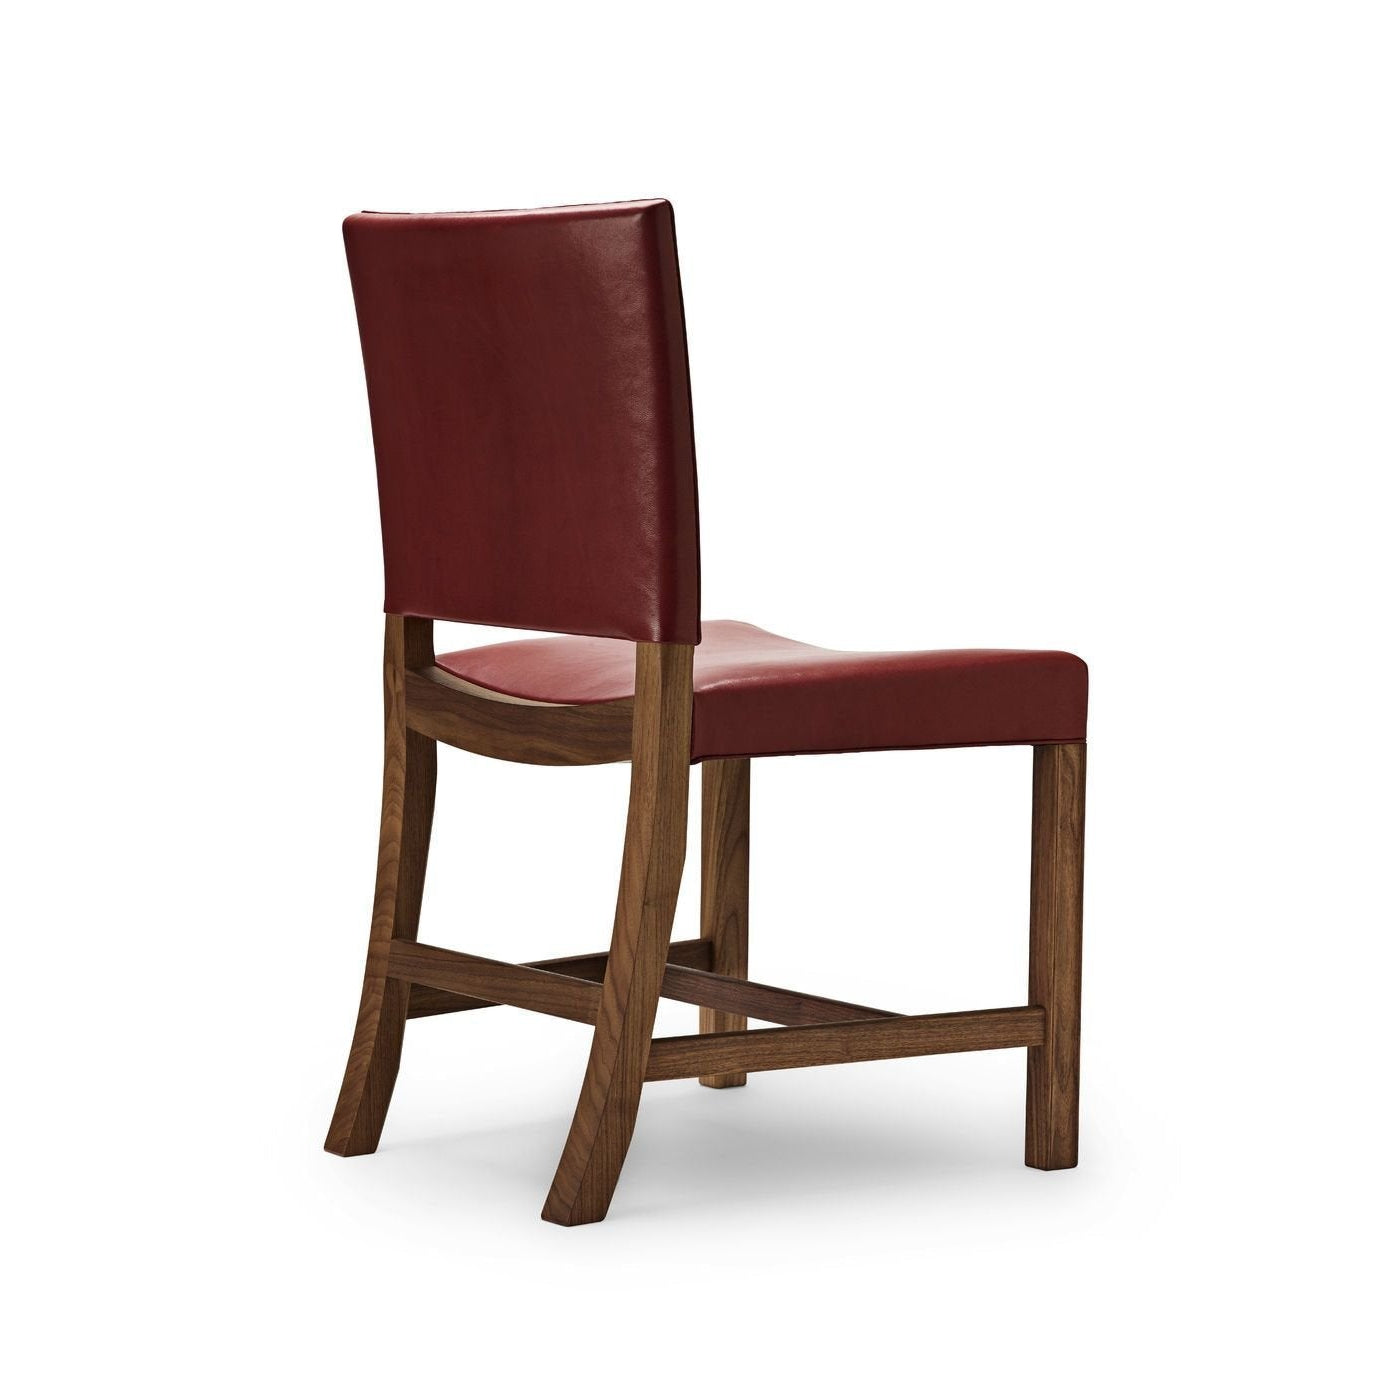 Carl Hansen KK47510 La silla roja, lacada de nogal/cabra roja